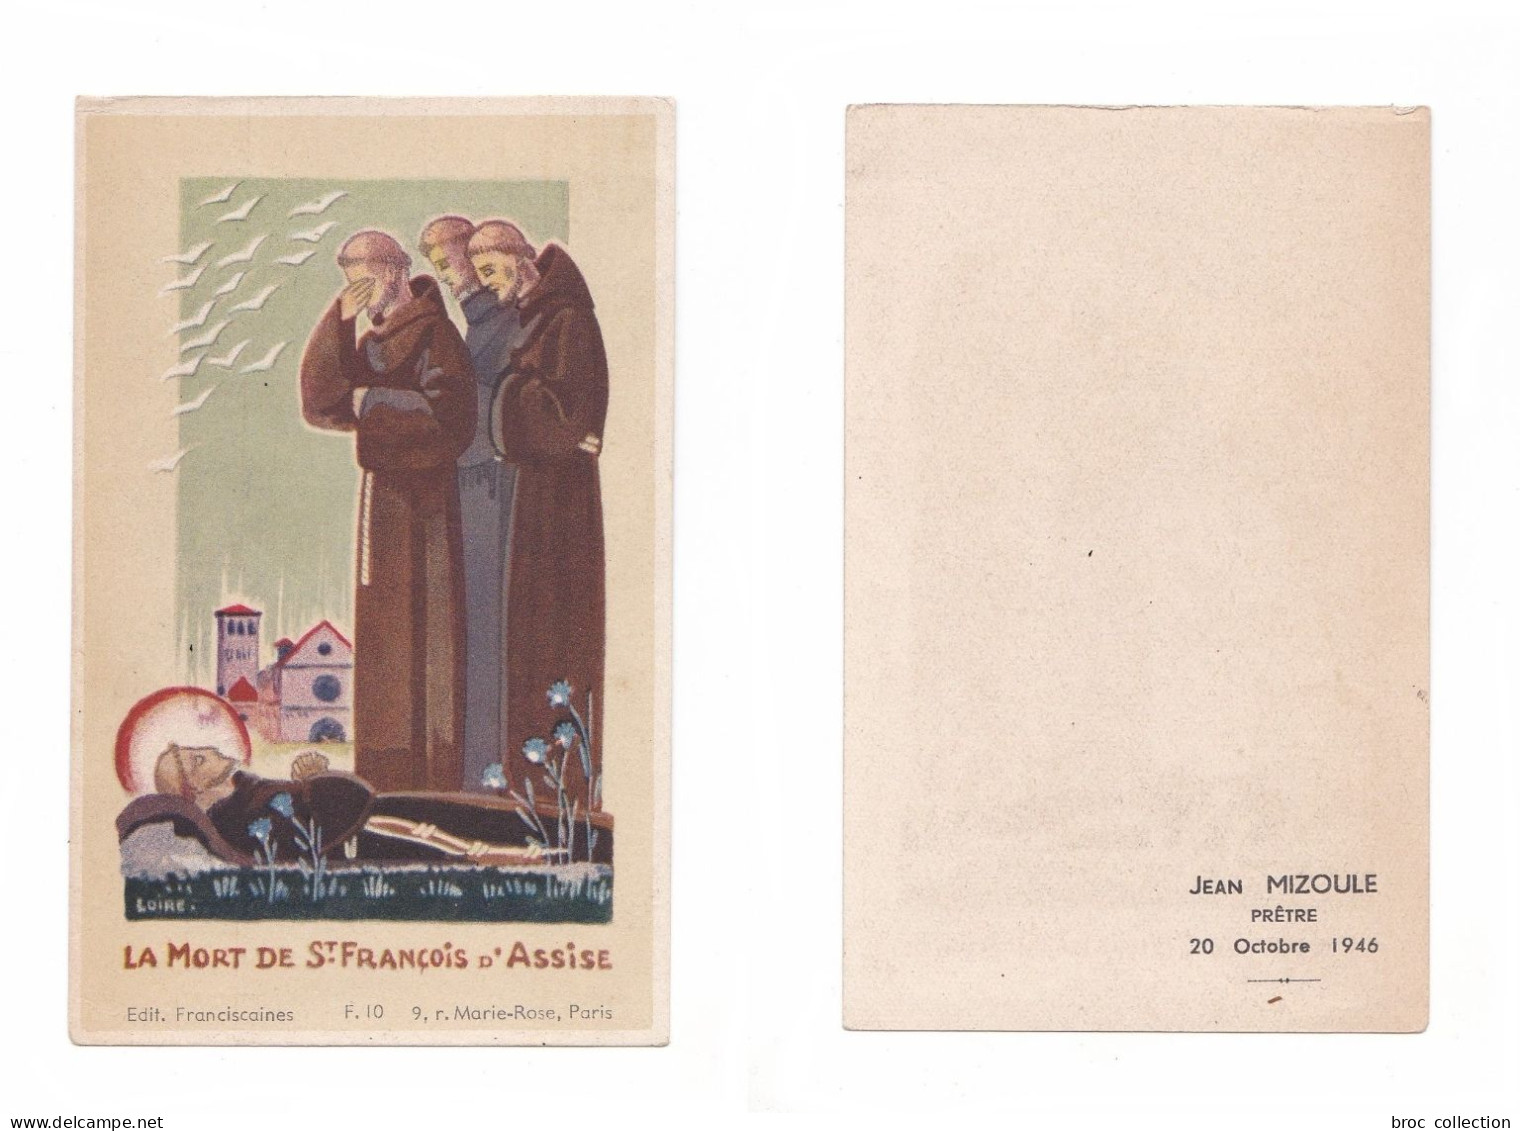 La Mort De Saint François D'Assise, Éditions Franciscaines F. 10, 1946, Jean Mizoule, Prêtre - Imágenes Religiosas